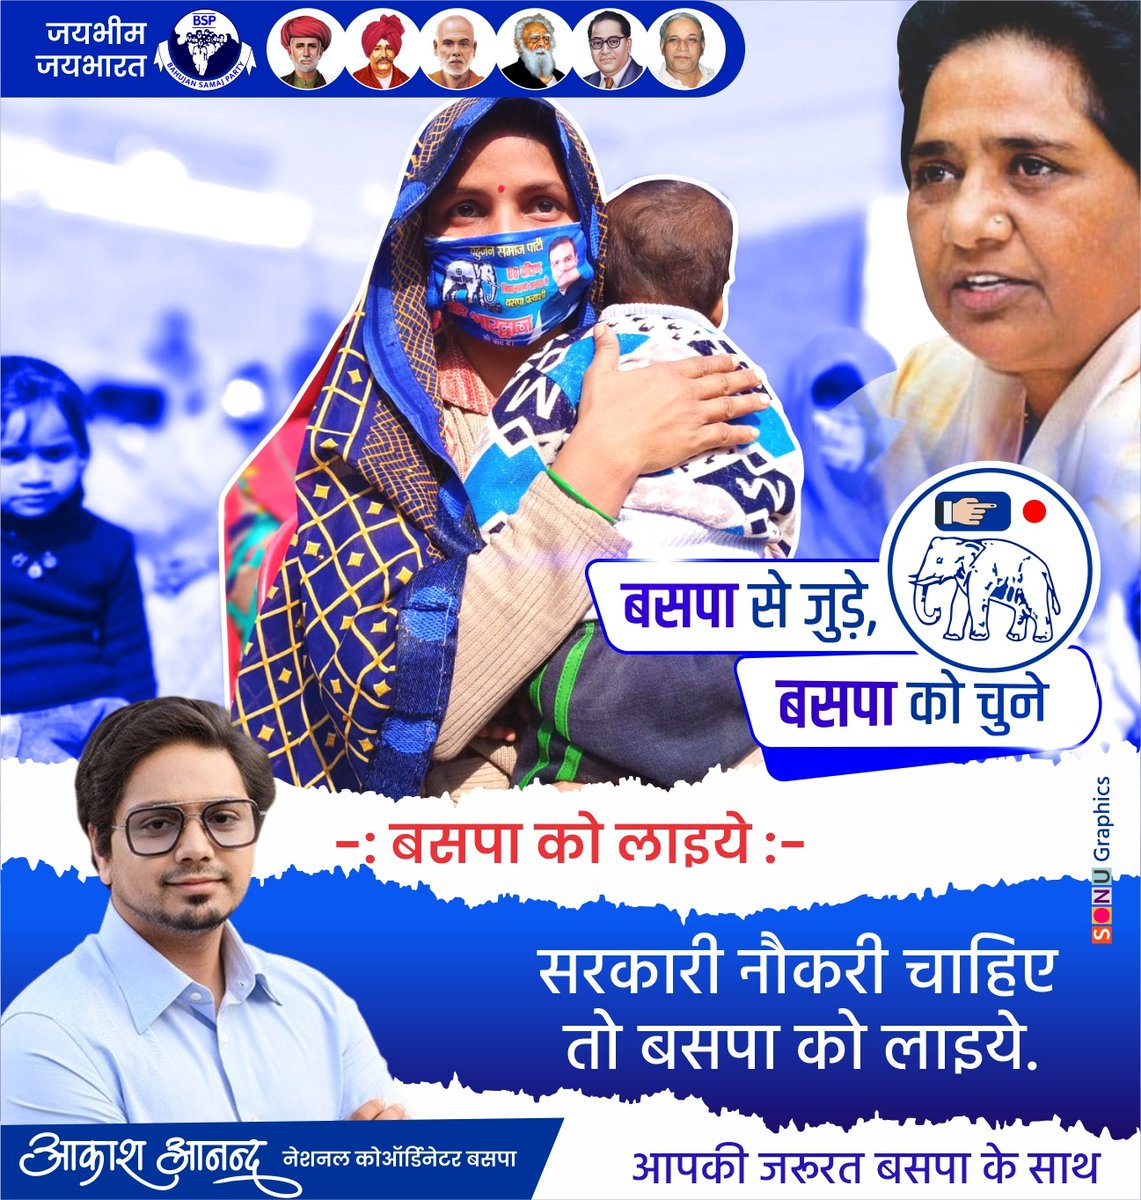 #बुलंदशहर

➡कल 11 बजे बहन @Mayawati जी करेंगी जनसभा को संबोधित

➡गौतमबुद्ध नगर से प्रत्याशी राजेंद्र सोलंकी पक्ष में मांगेंगी वोट

➡बुलंदशहर से प्रत्याशी गिरीश जाटव के पक्ष में मांगेंगी वोट

➡गौतमबुद्ध नगर के सिकंदराबाद में होनी है जनसभा

#Bulandshahr